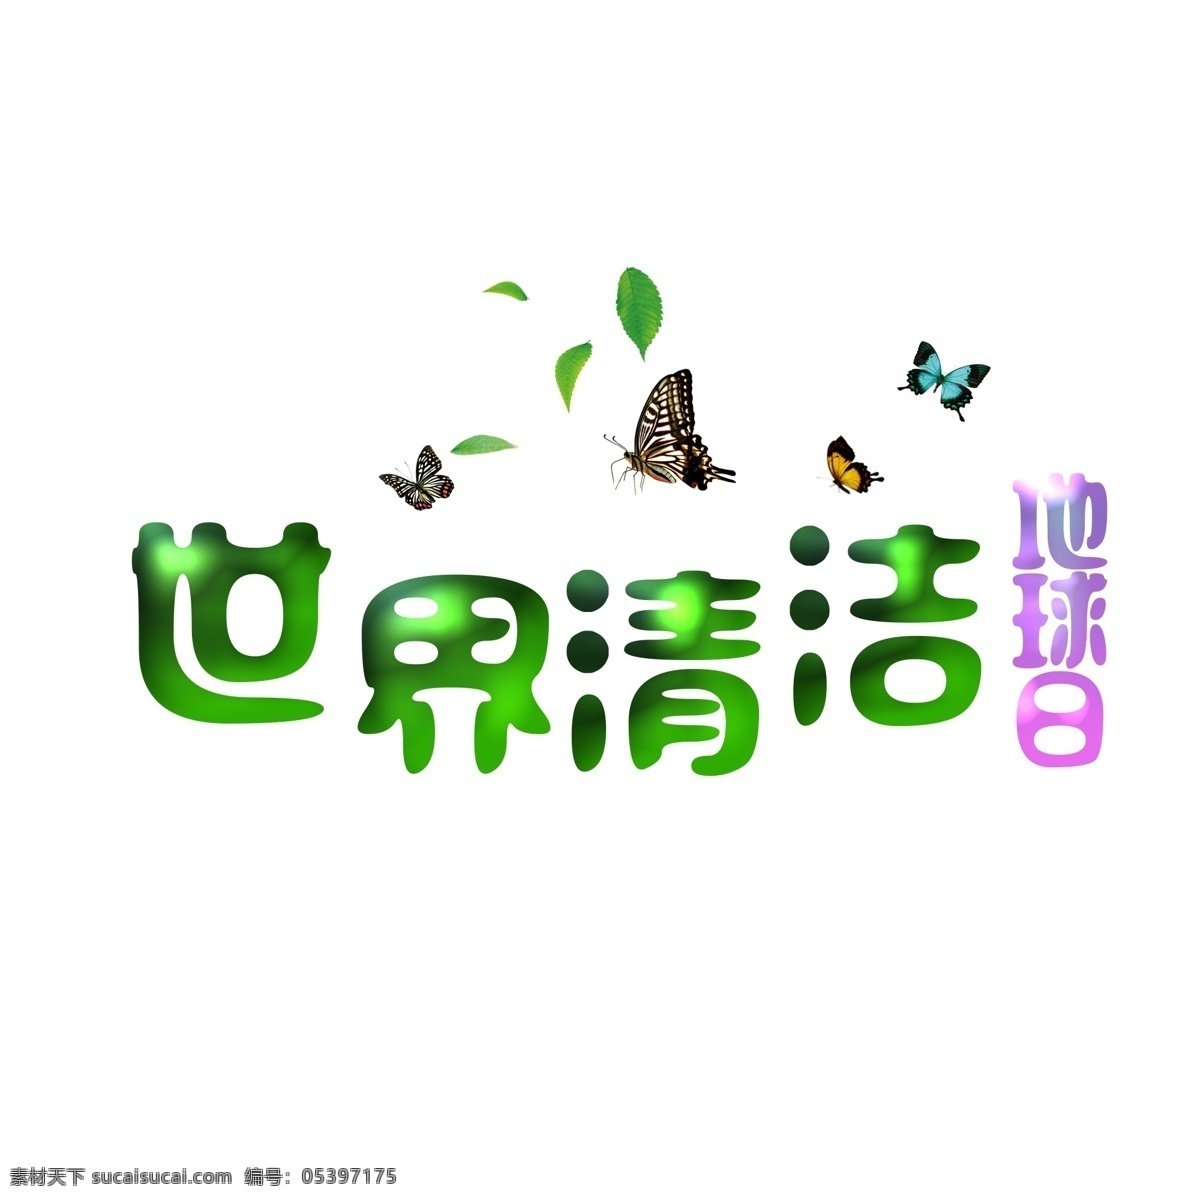 世界 清洁 地球日 文字 绿叶 绿色 污染 减少污染 维护清洁 艺术字